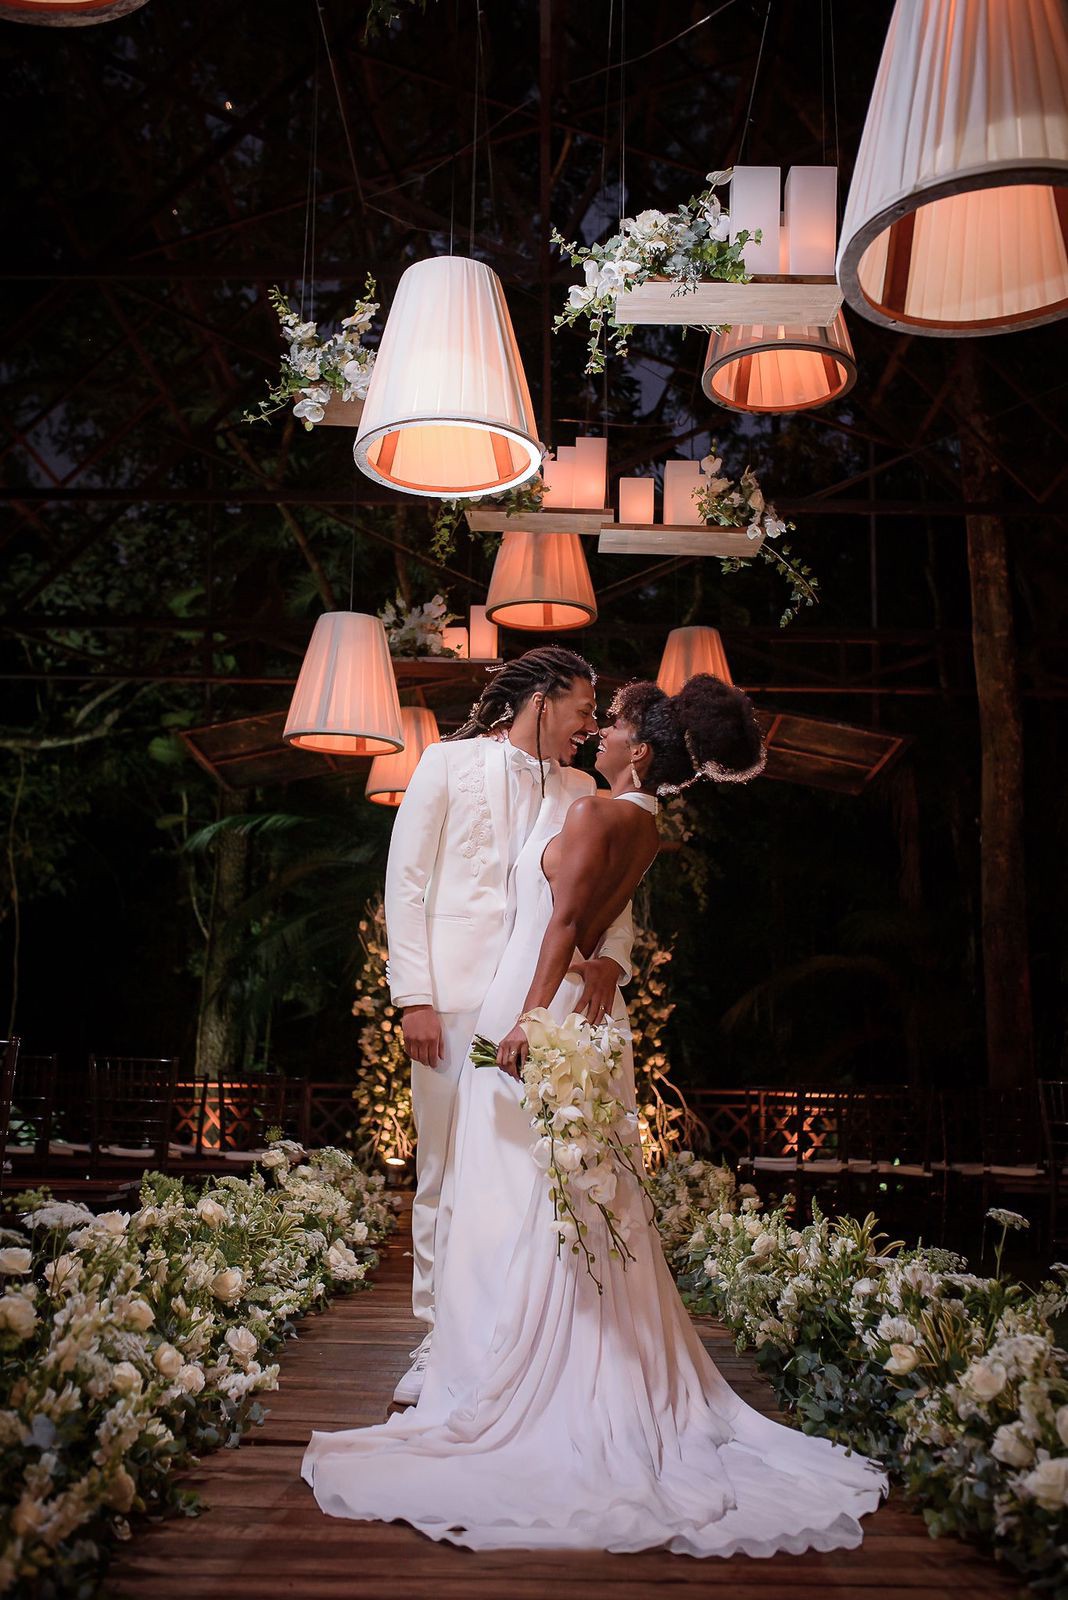 O casamento de Ivi Pizzott e Luis Navarro (Foto: Divulgação / Vitor Barboni)